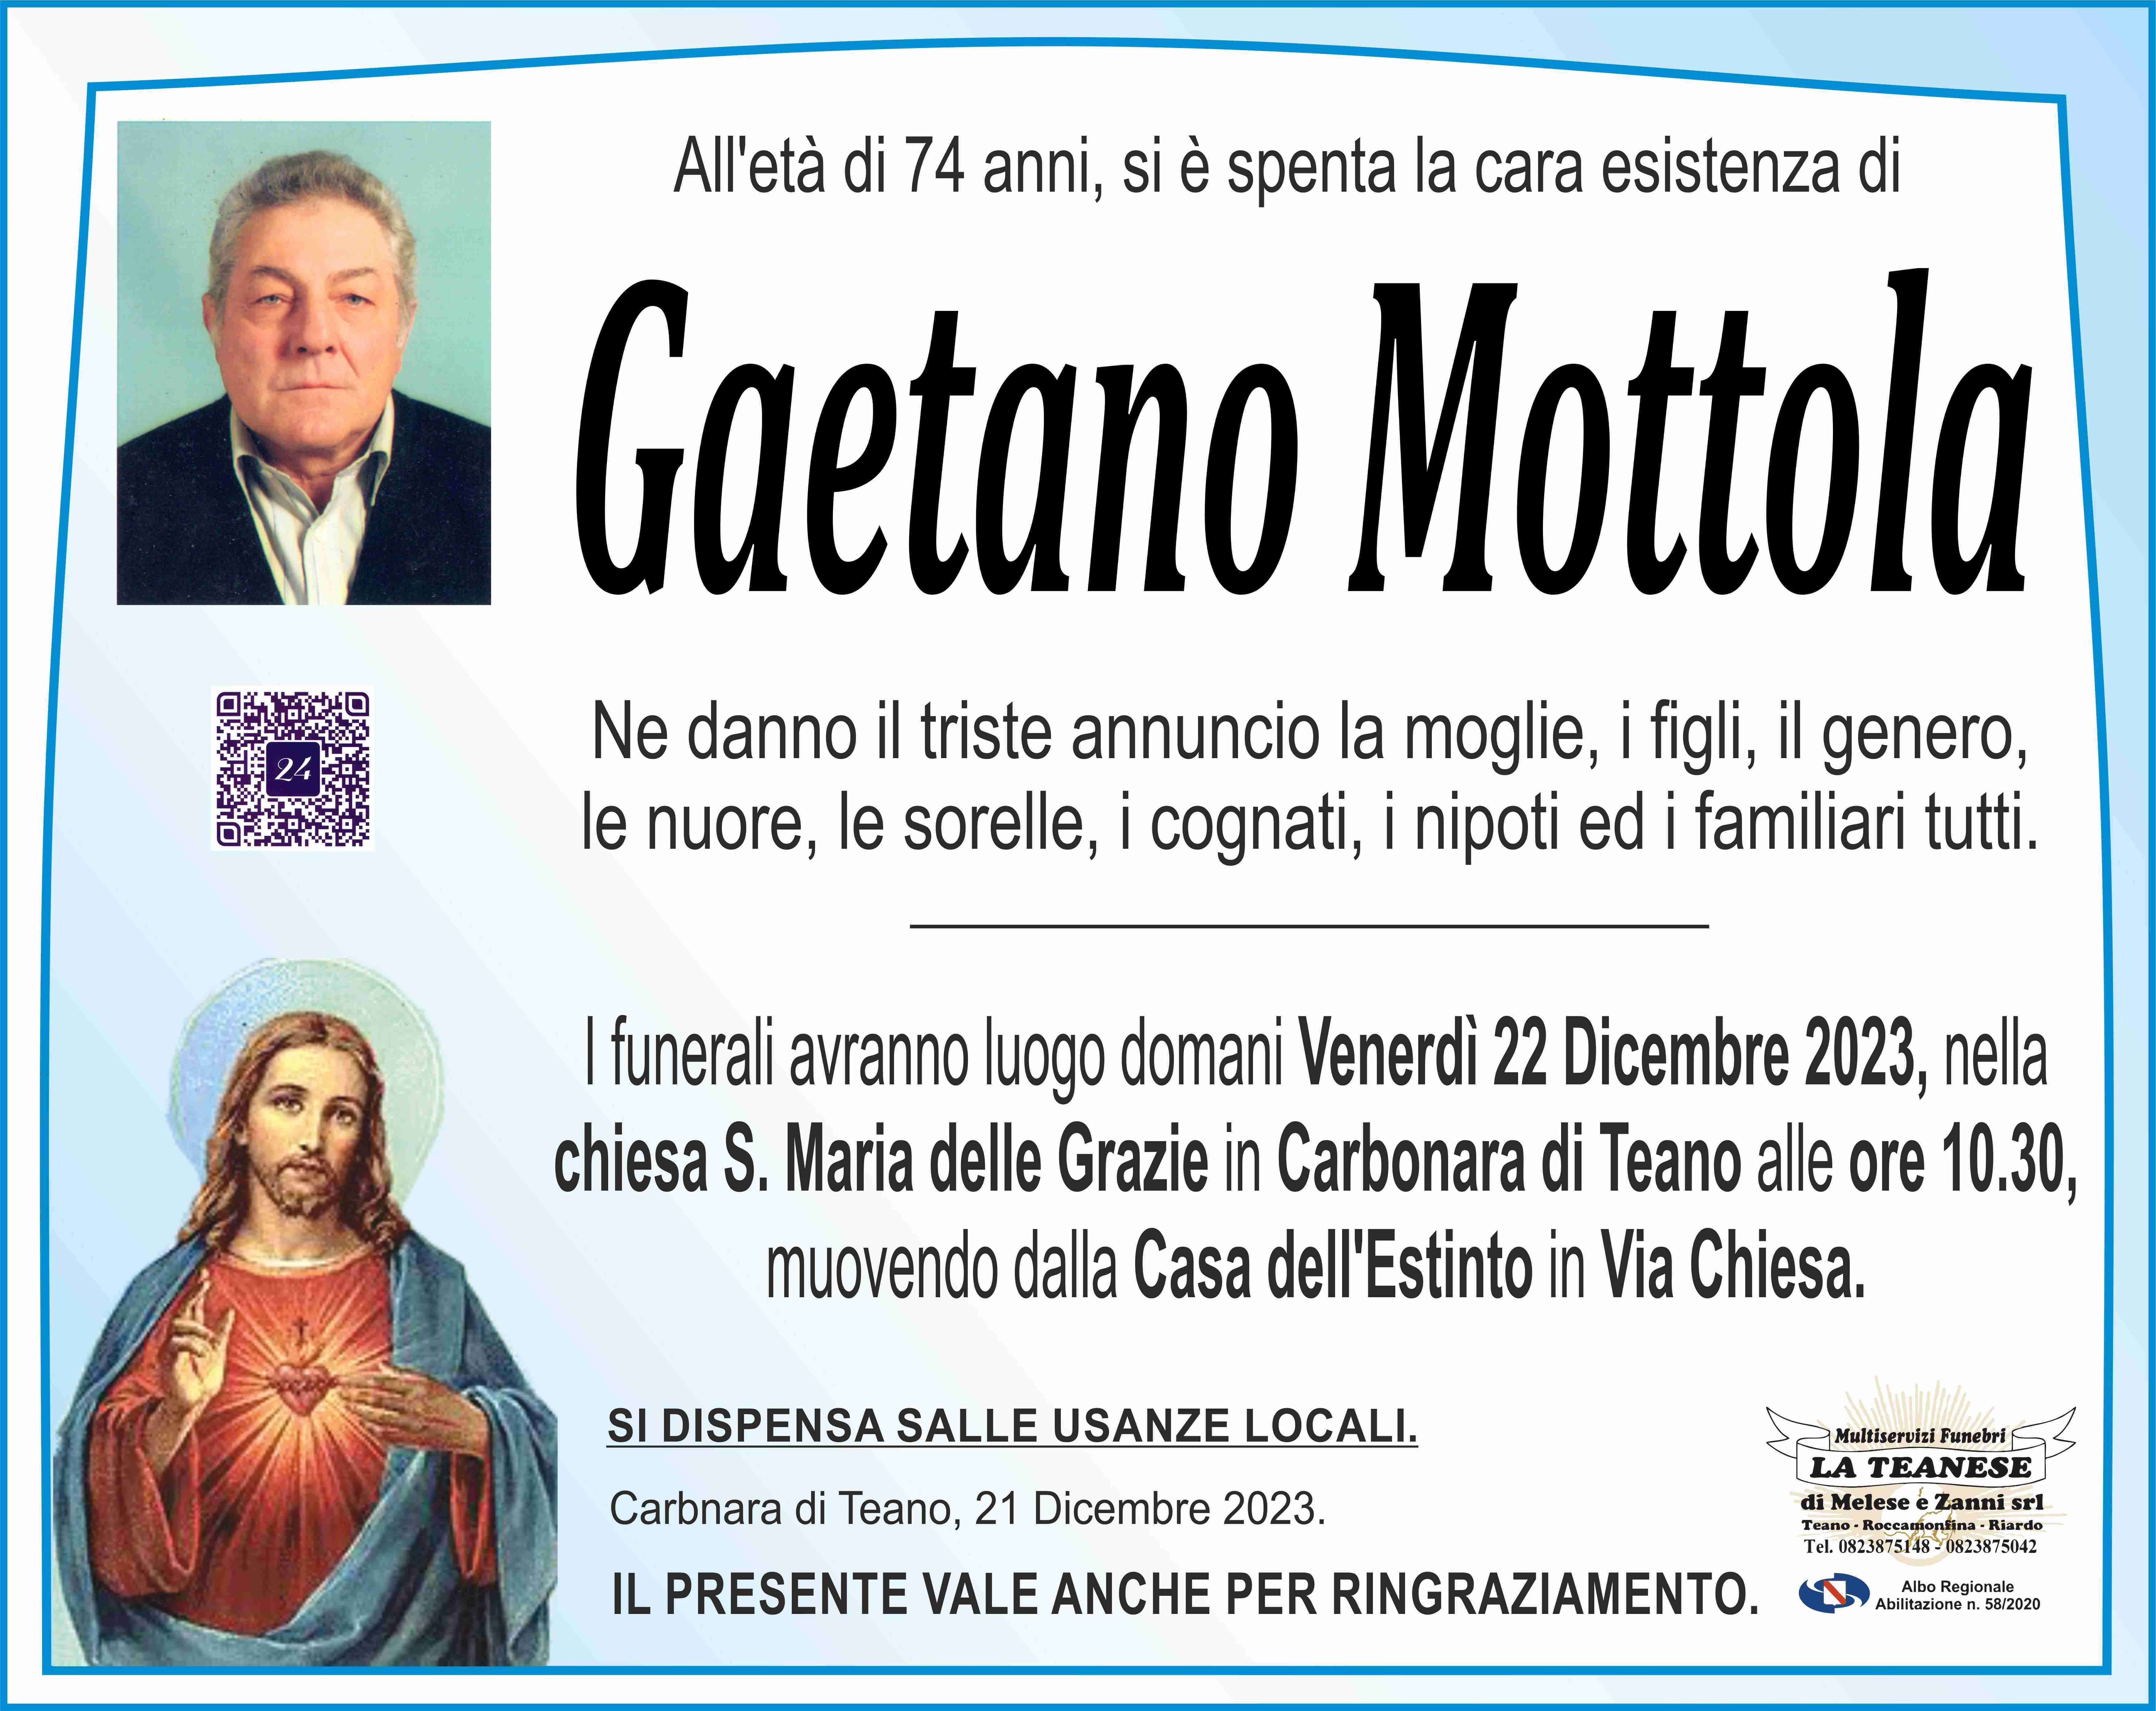 Gaetano Mottola